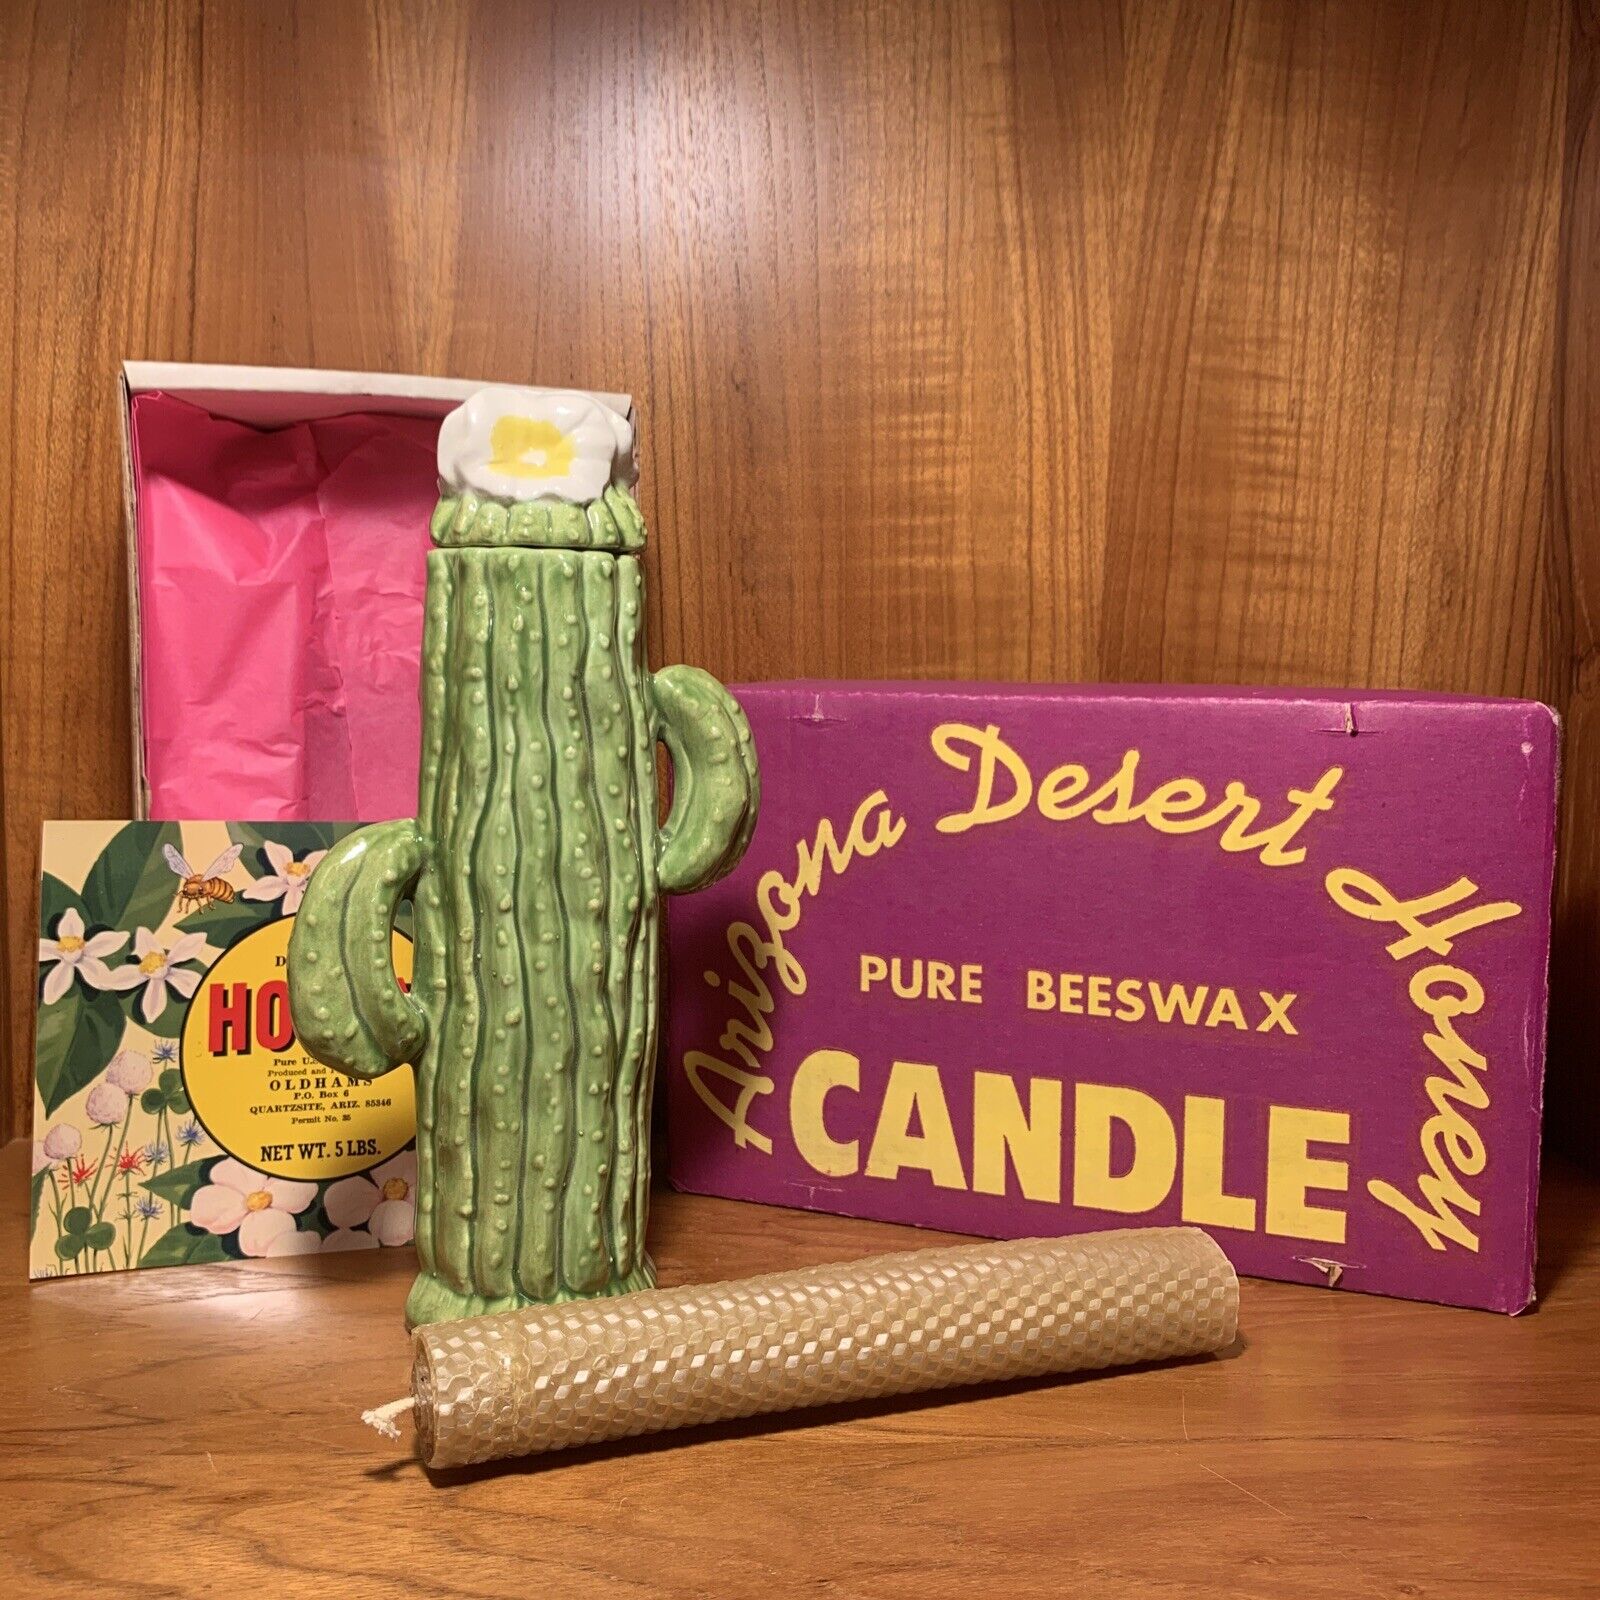 Vintage Arizona Desert Bloom Honey Green Ceramic Cactus Candle Quartzsite AZ ‘67